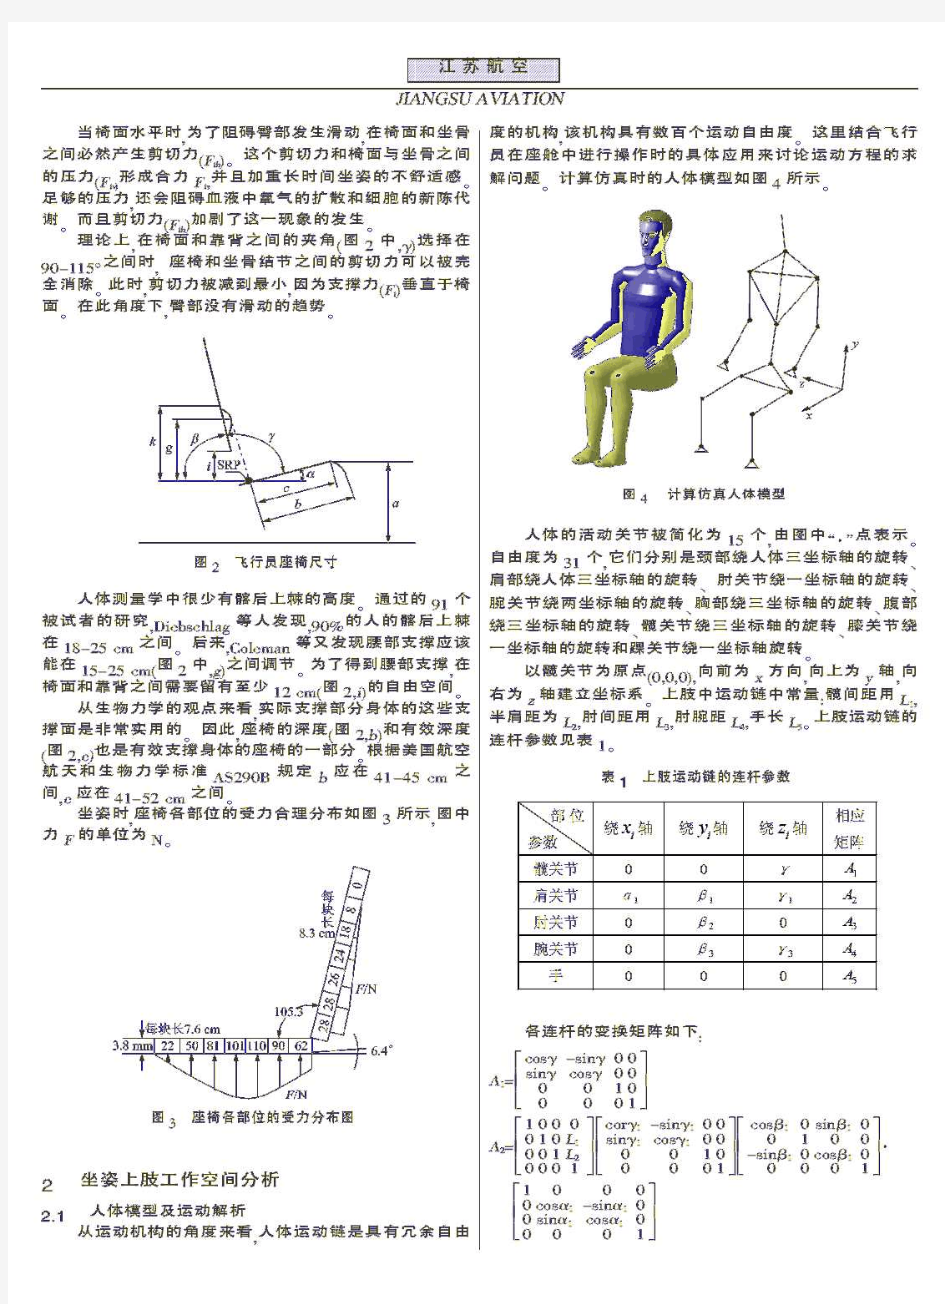 基于人机工程学的轻型运动飞机座椅设计方法研究